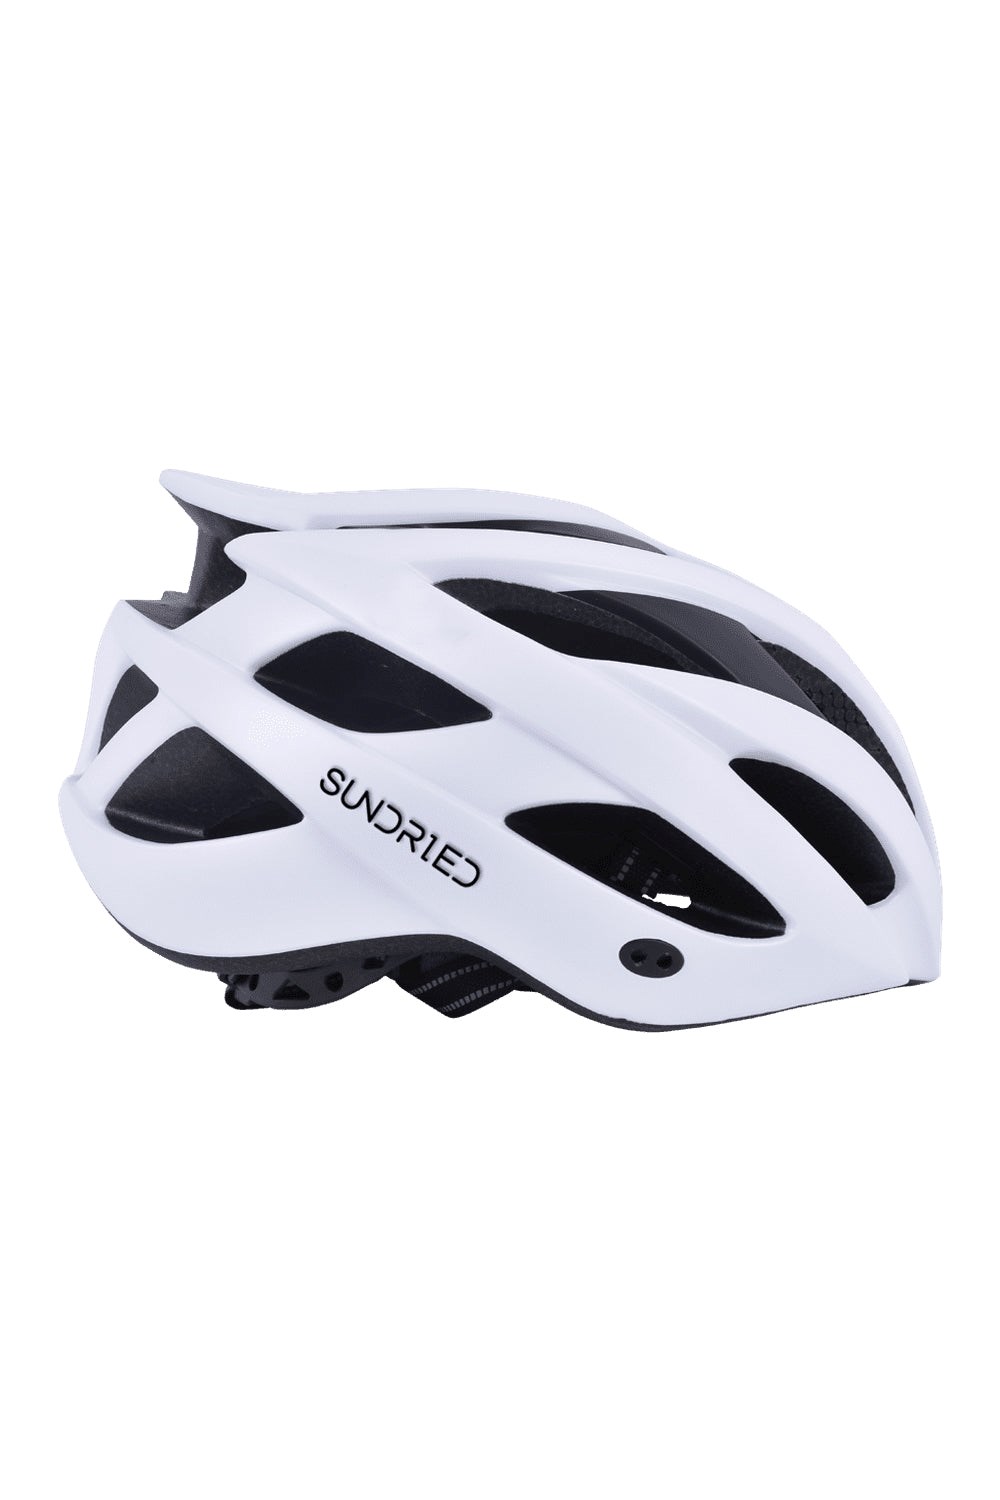 Rouleur MTB Cycle Helmet -